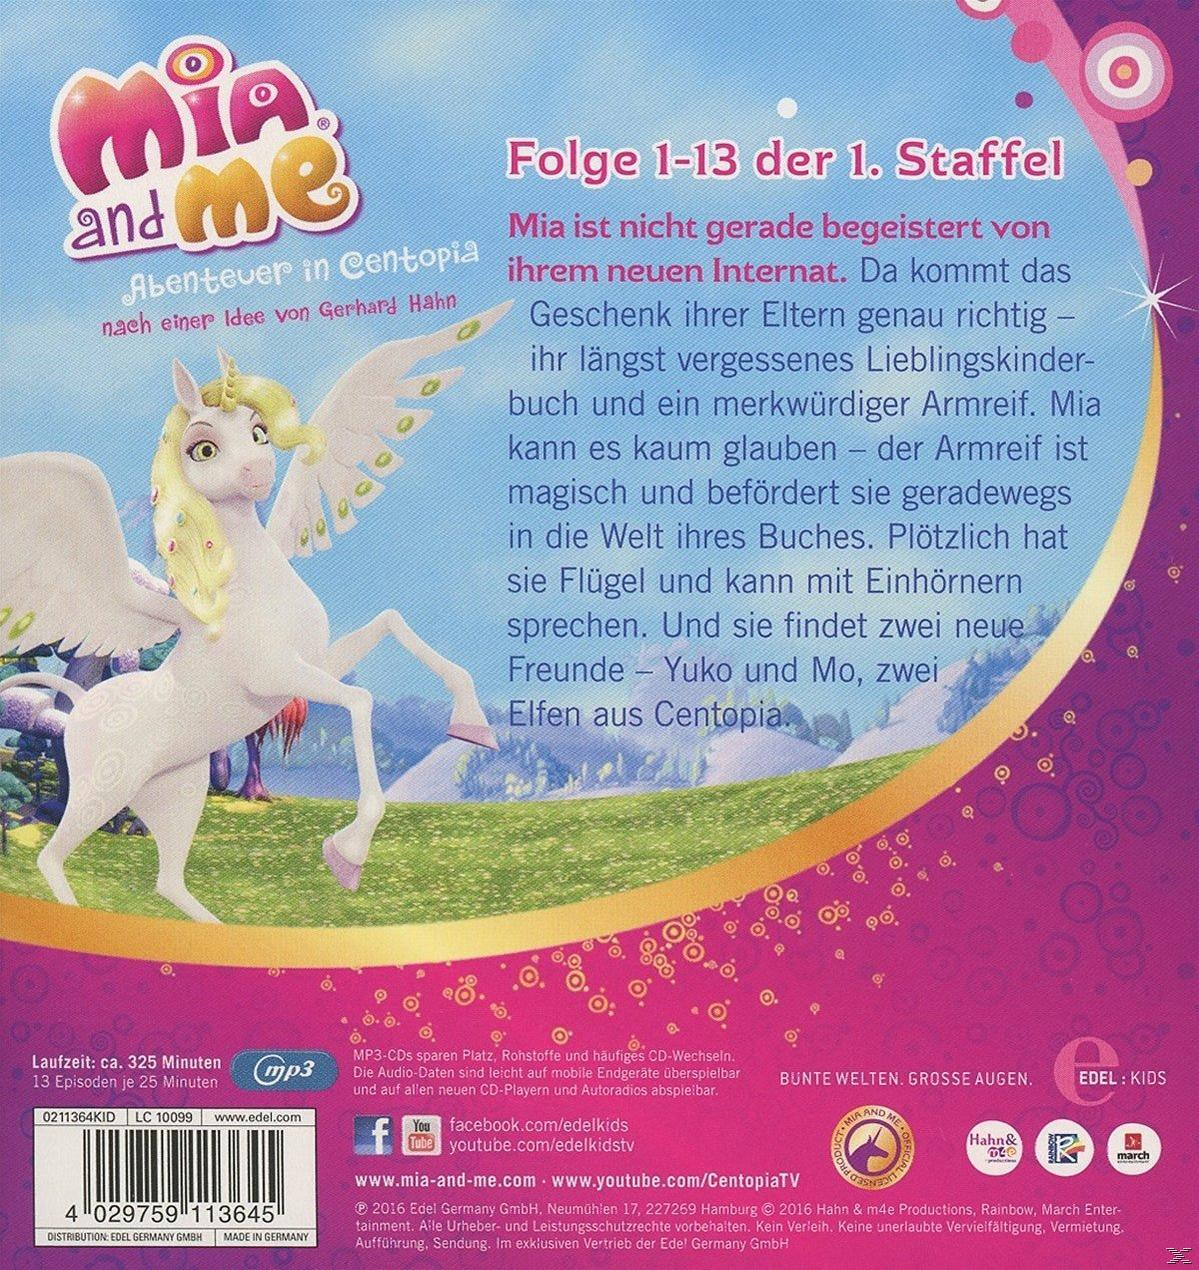 Me (CD) 1.1,Folge Staffelbox And (Staffel Mia 1-13) - -